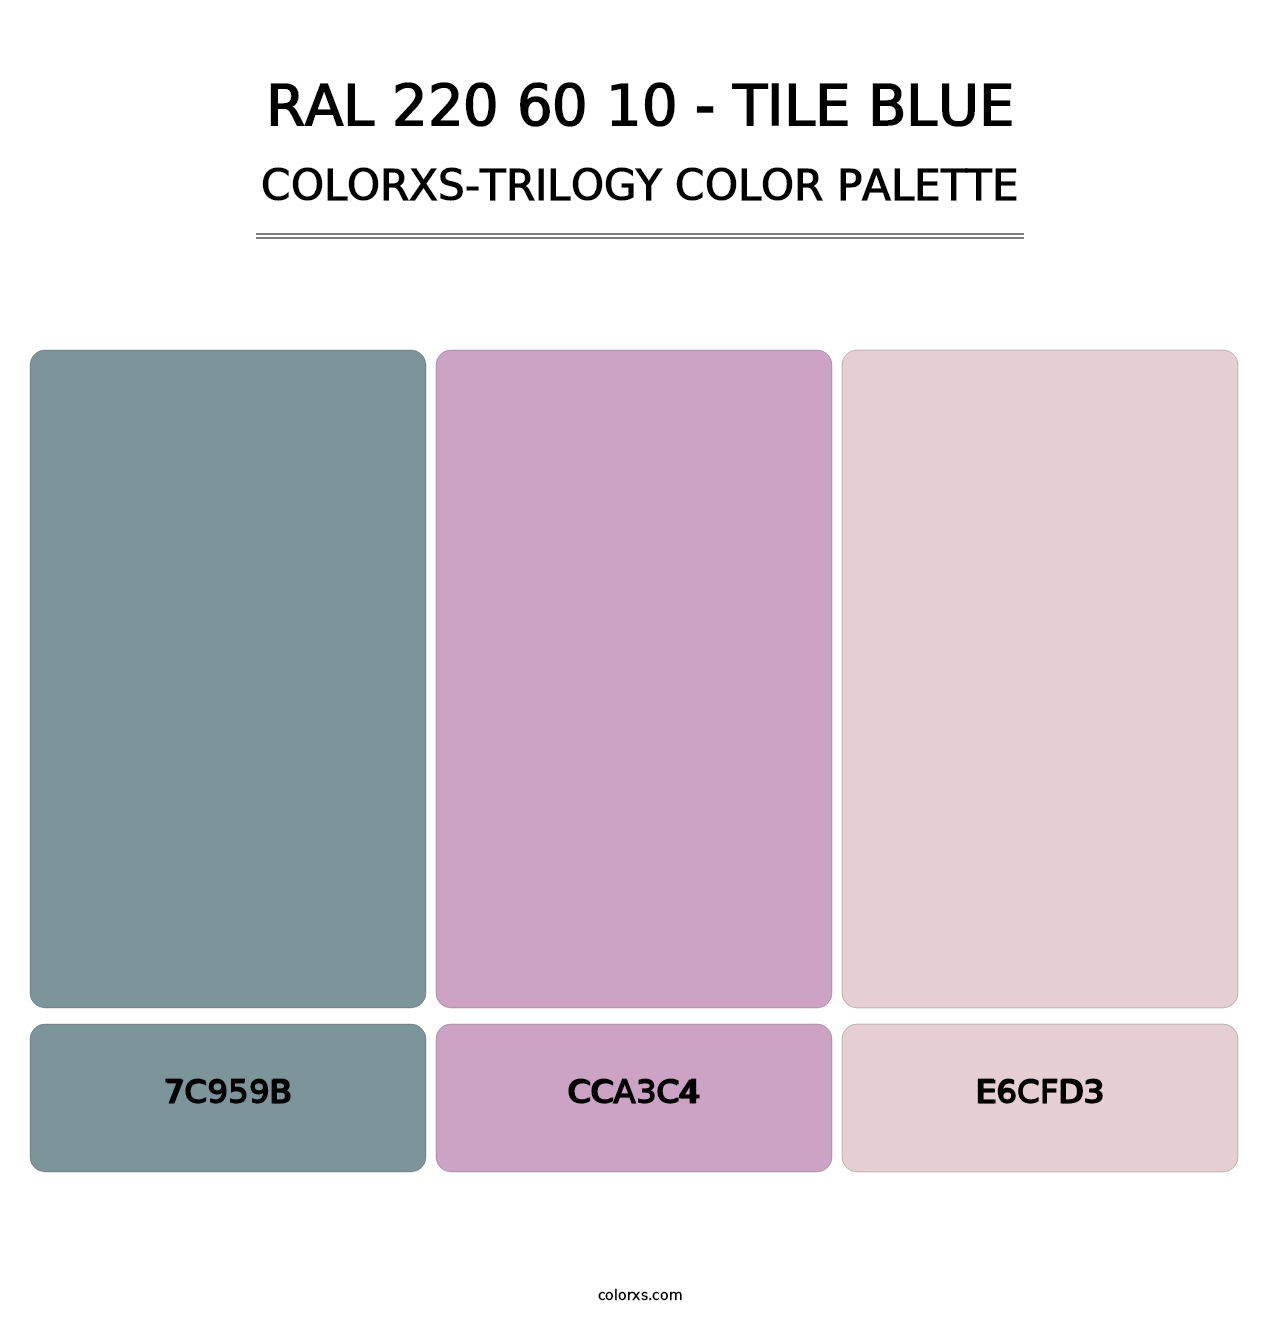 RAL 220 60 10 - Tile Blue - Colorxs Trilogy Palette